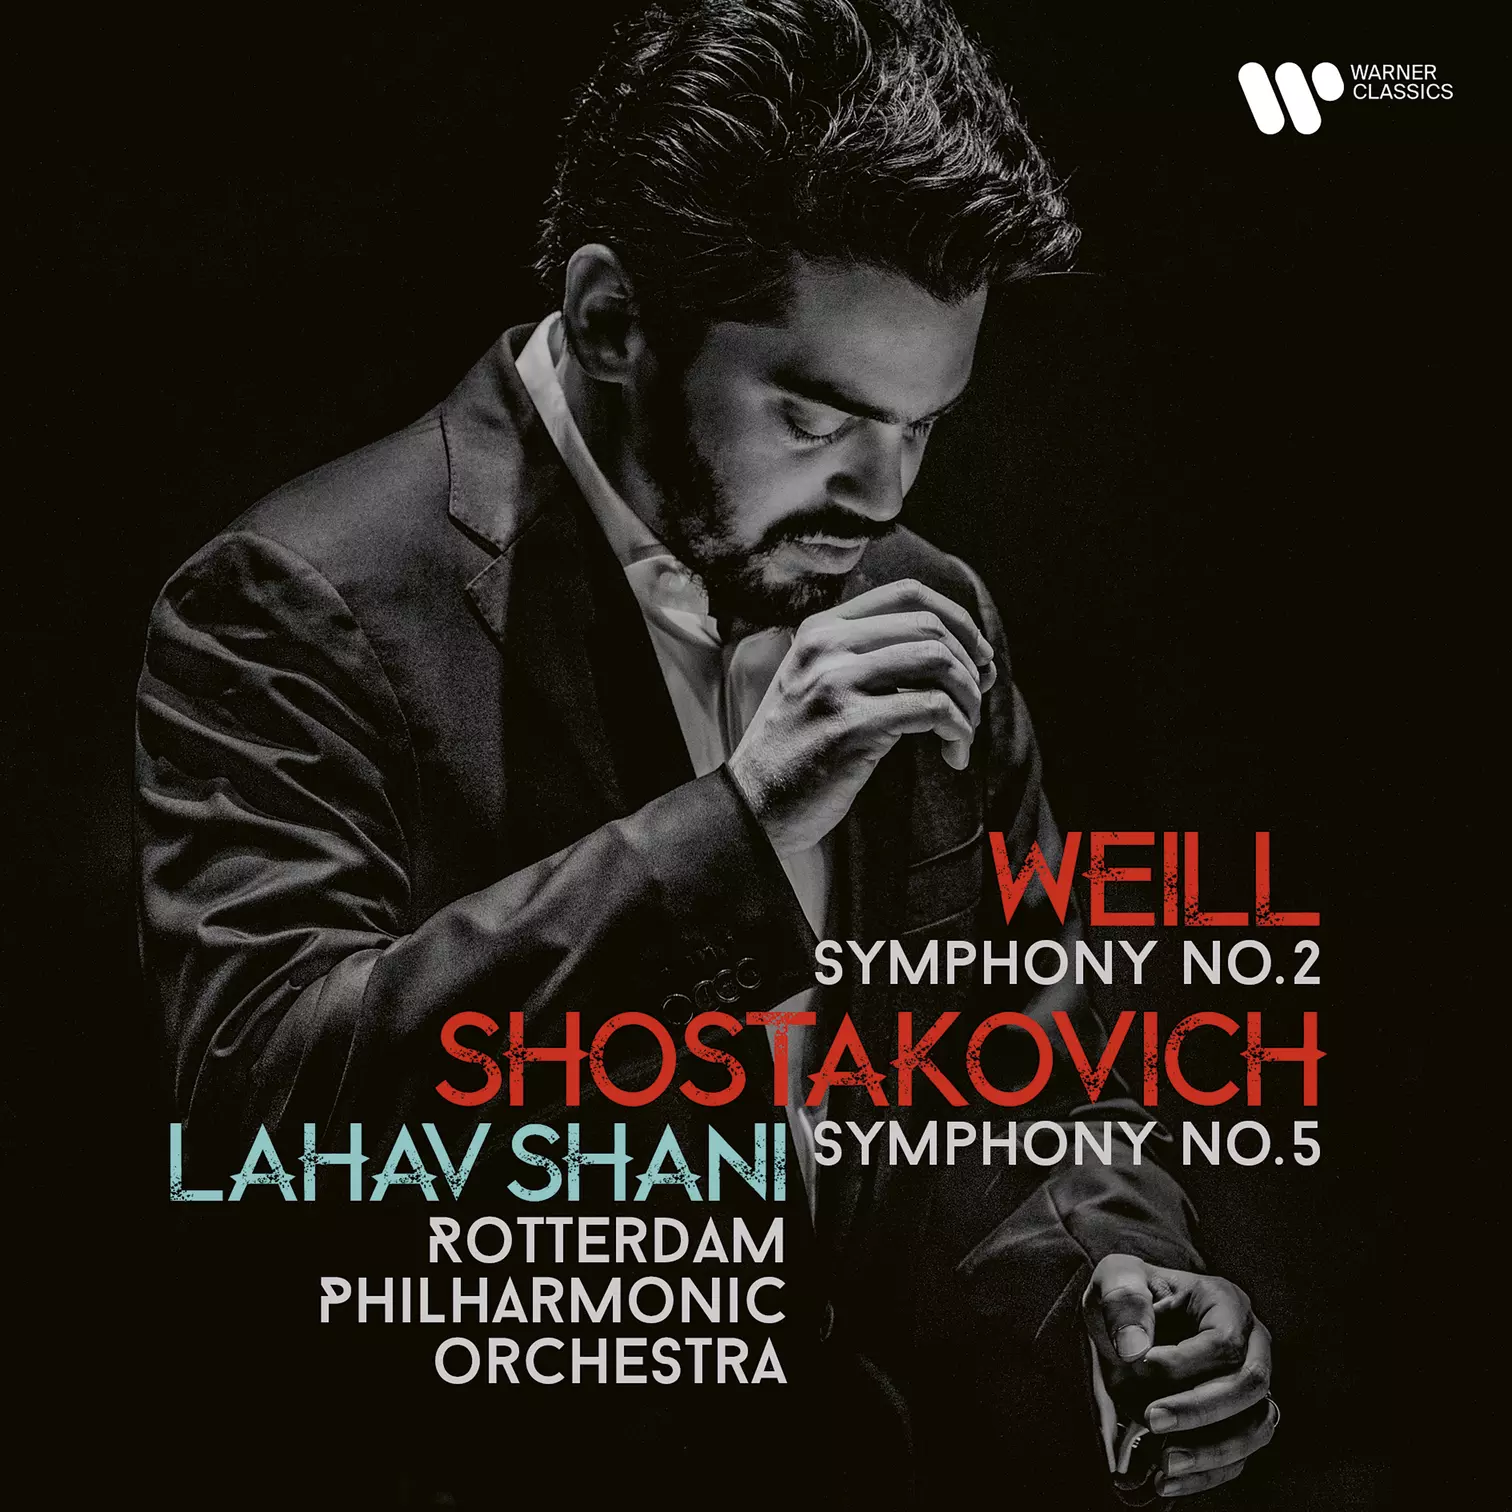 Lahav Shani Weill Symphony No. 2 & Shostakovich Symphony No. 5